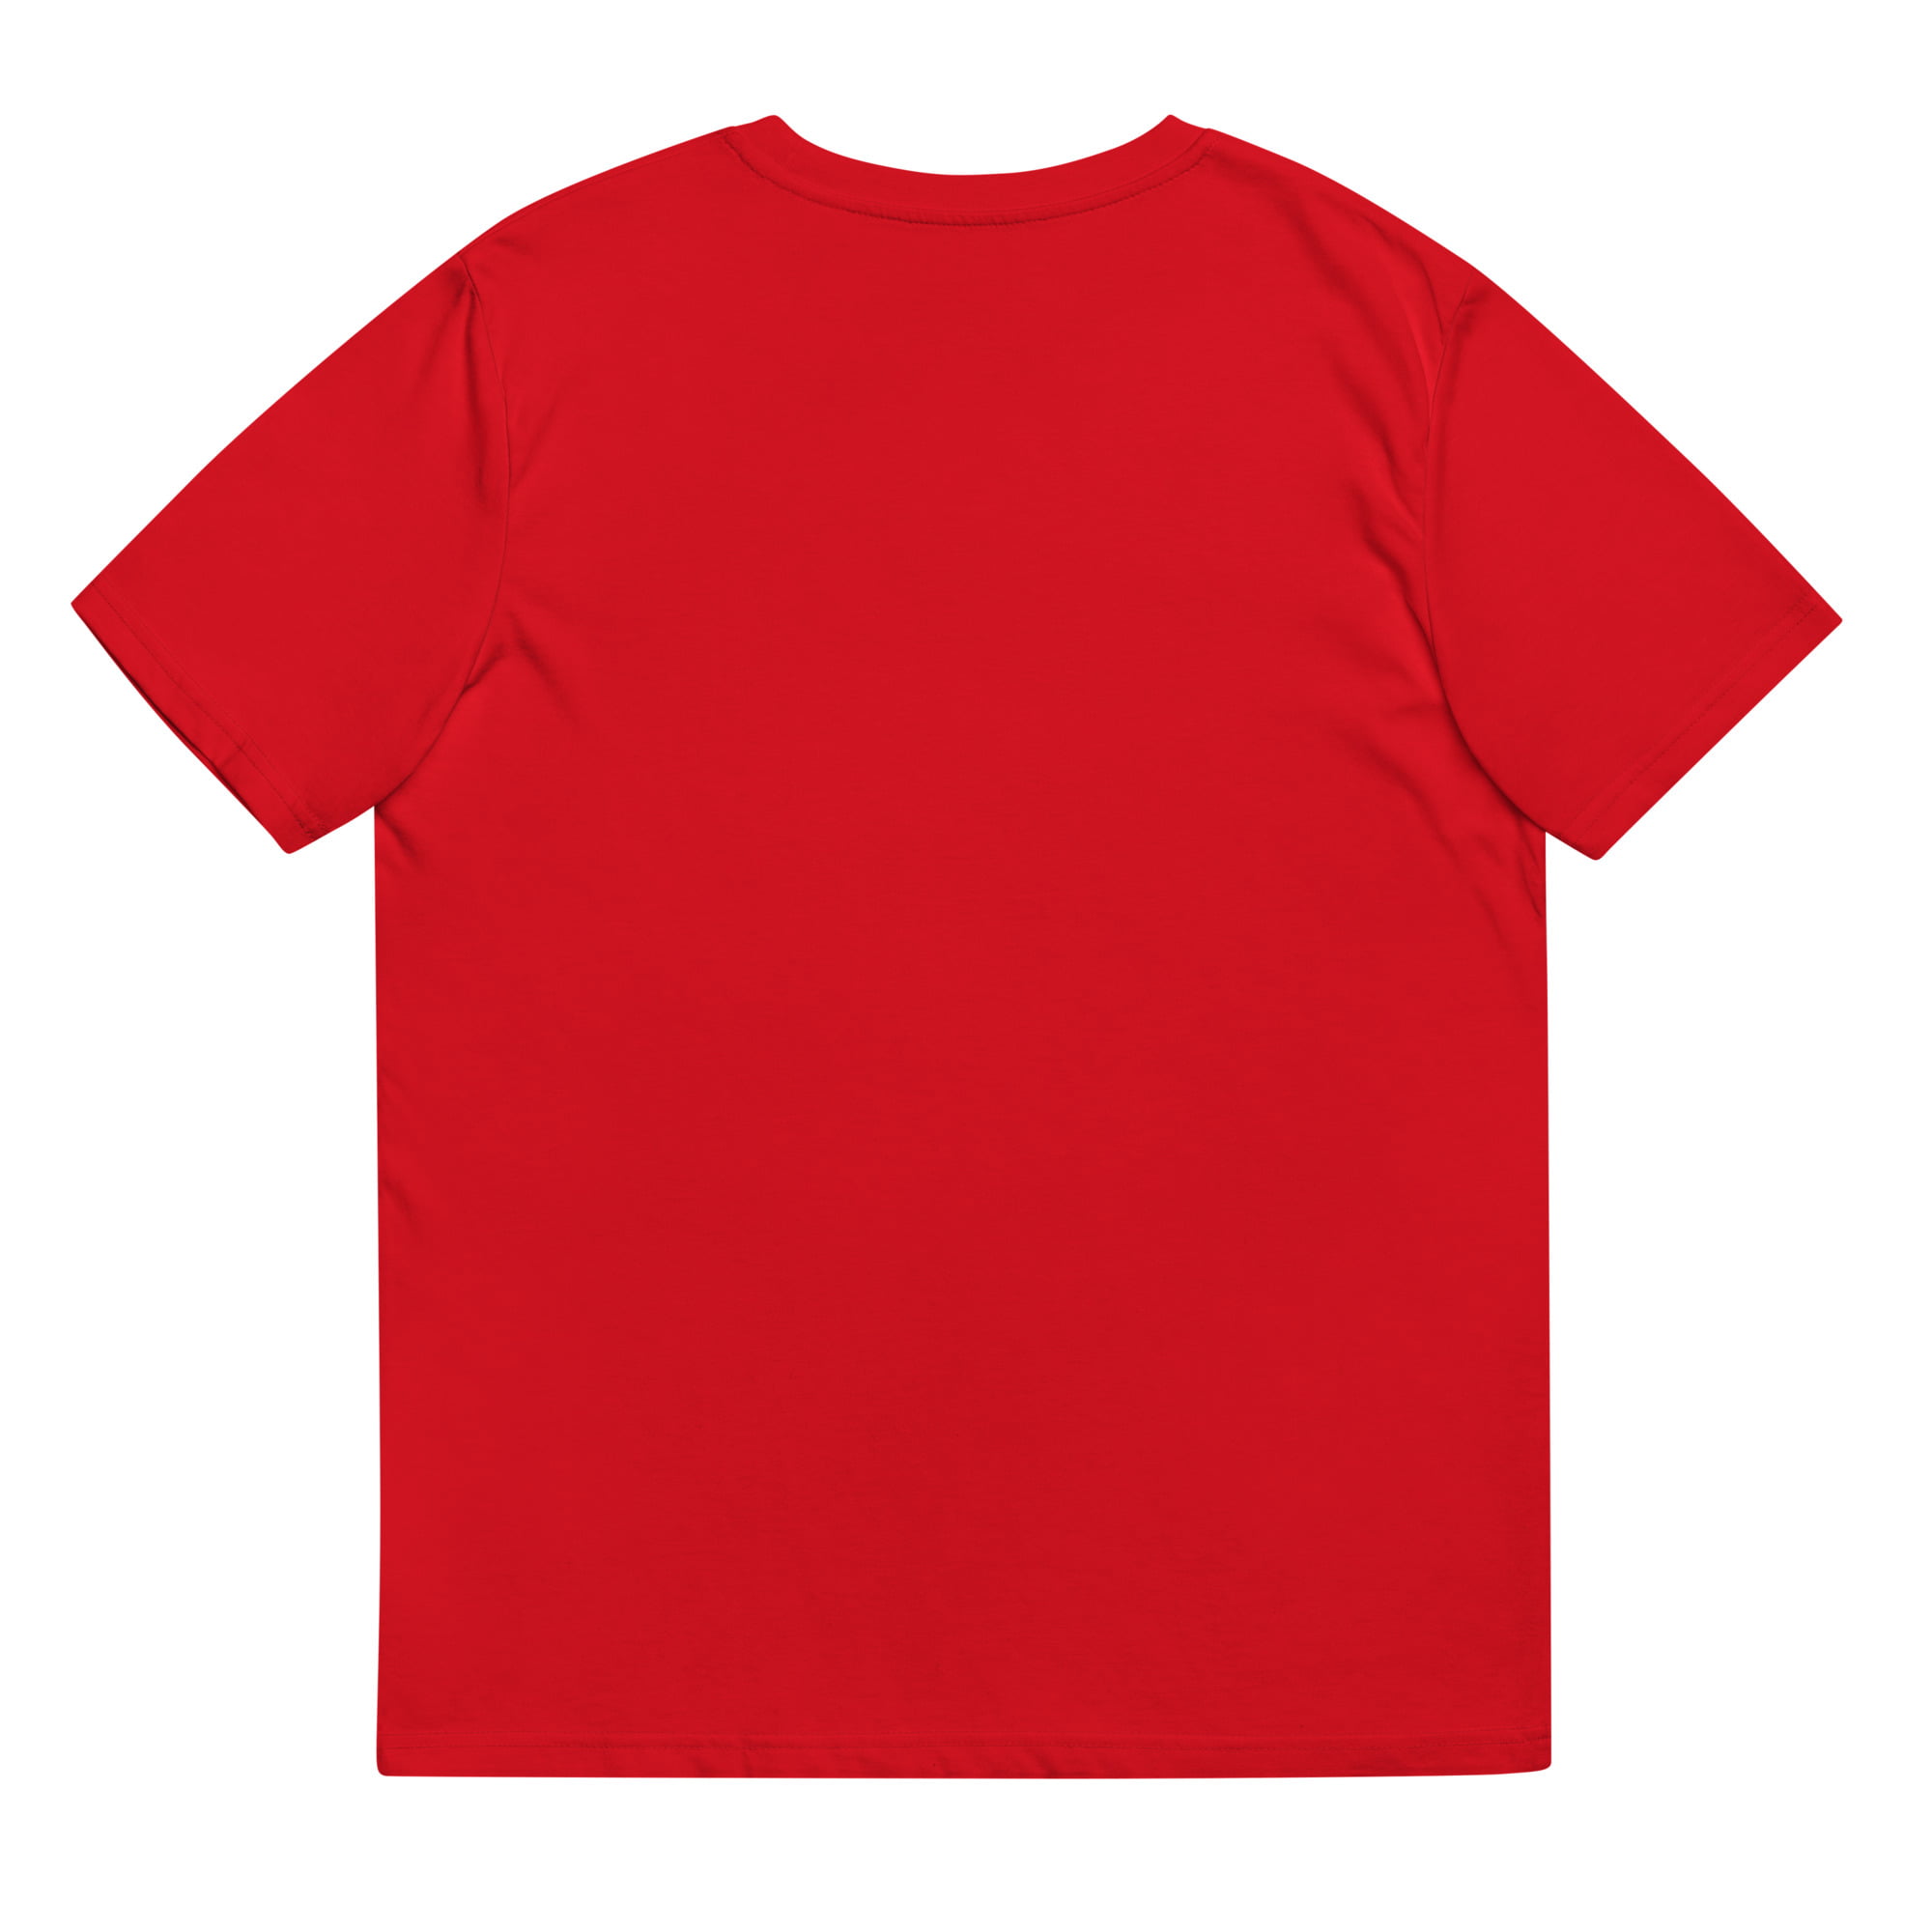 unisex organic cotton t shirt red back 64d270a949194.jpg